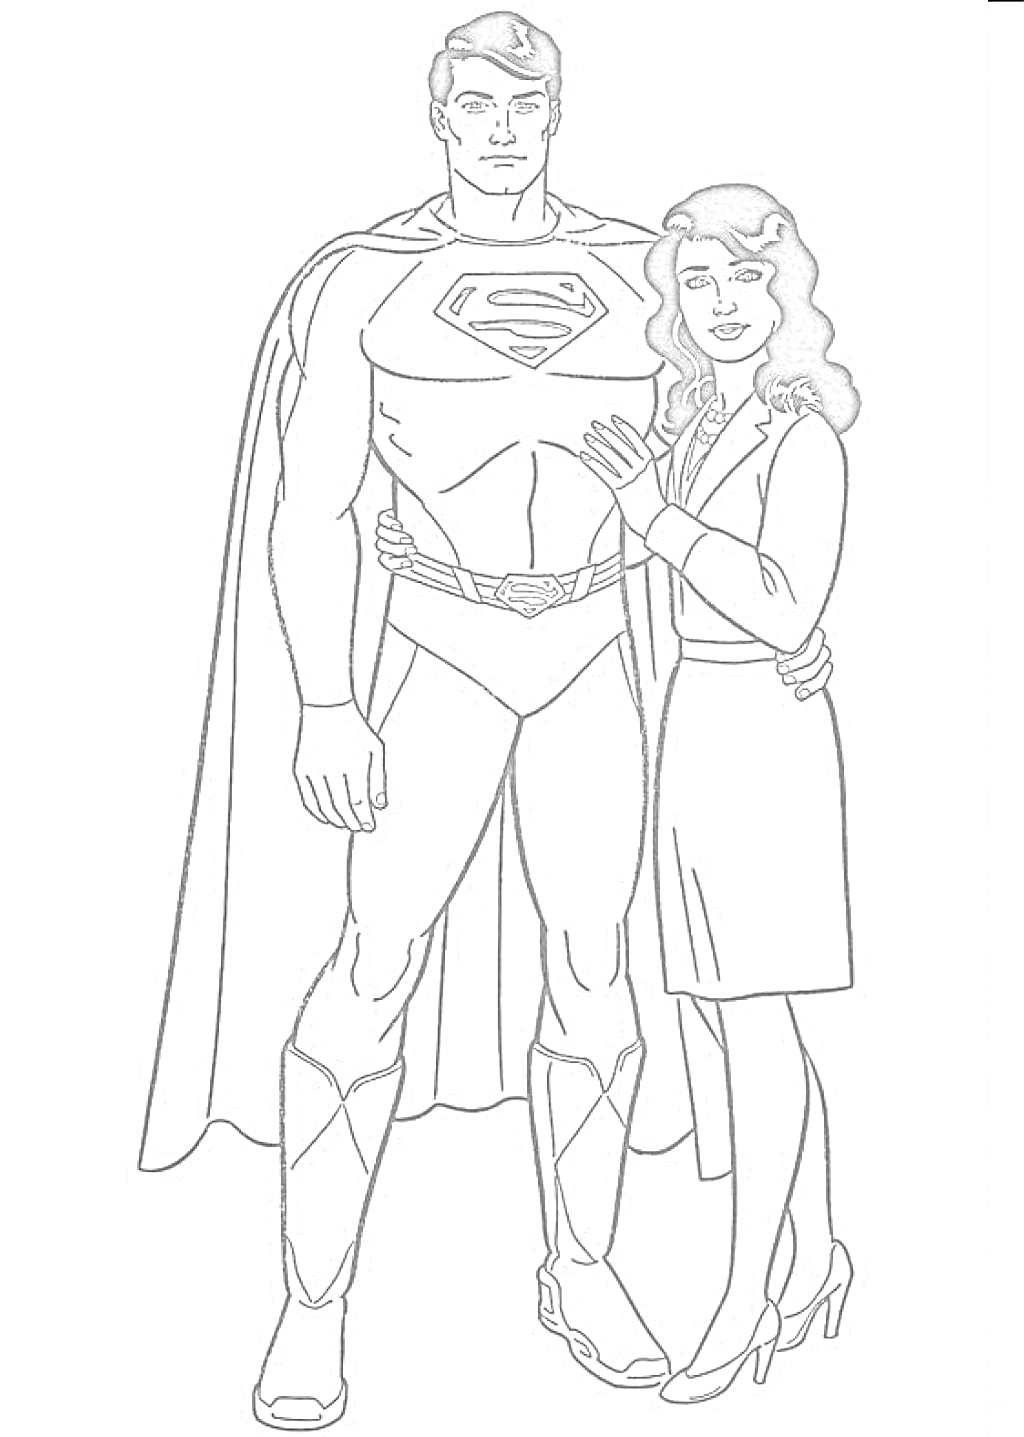 Супермен и женщина рядом с ним в платье и туфлях